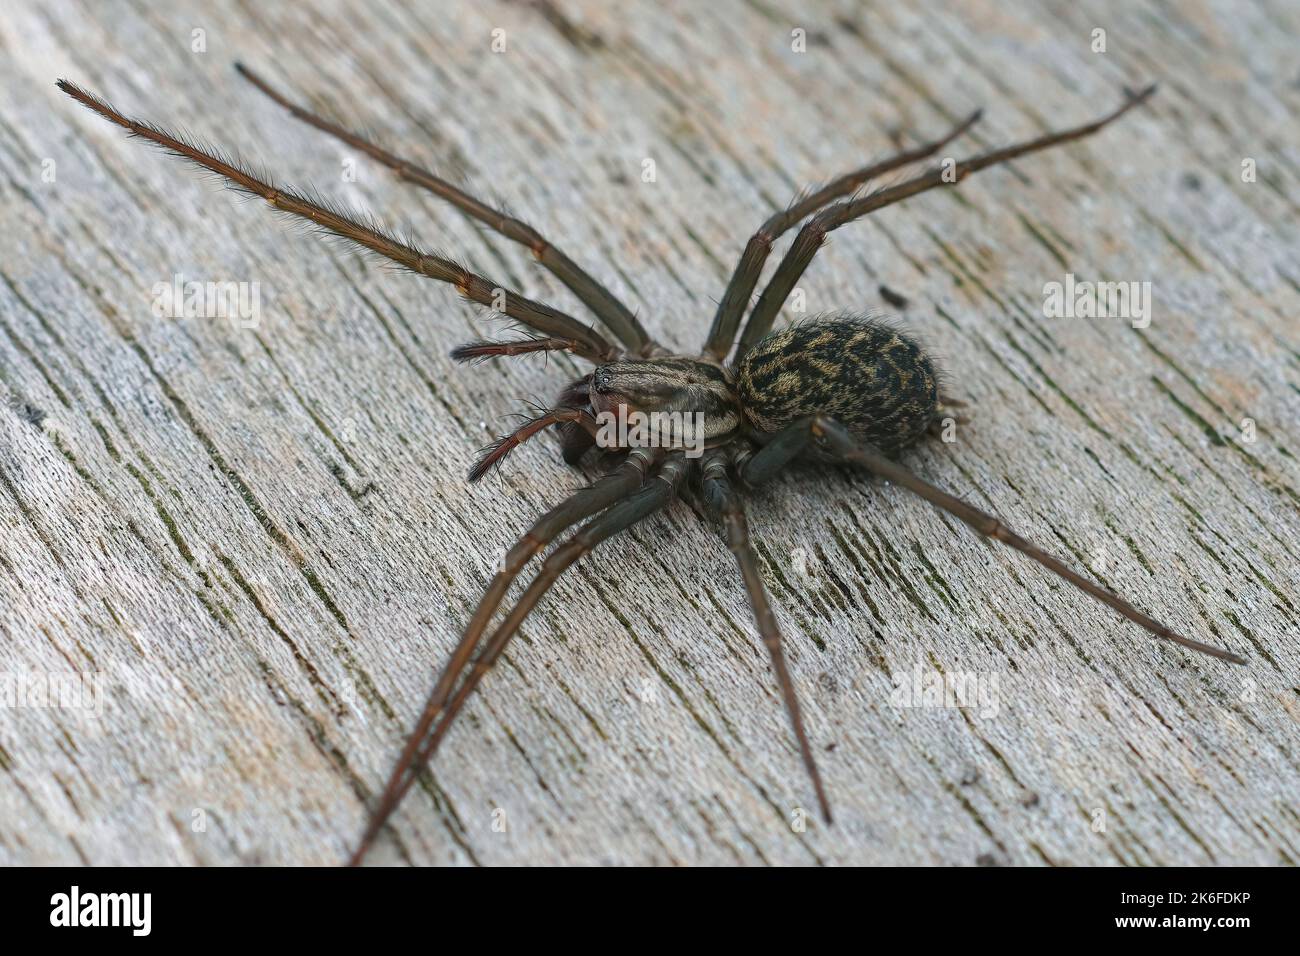 Eine Nahaufnahme der Spinne Eratigena atrica auf einer Holzoberfläche Stockfoto